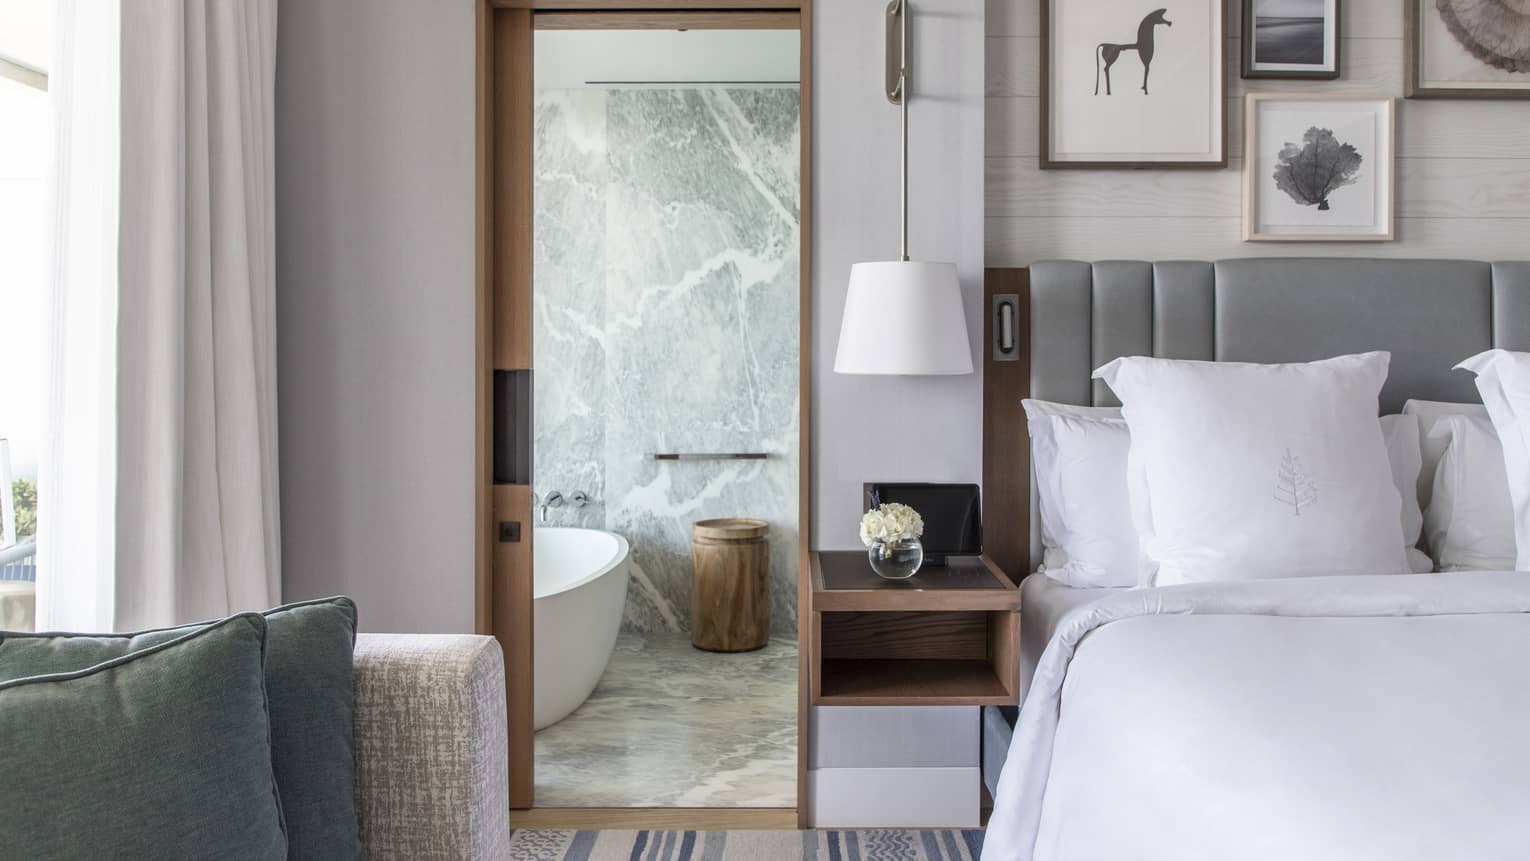 Bed, grey headboard, doorway to marble bathroom with tub